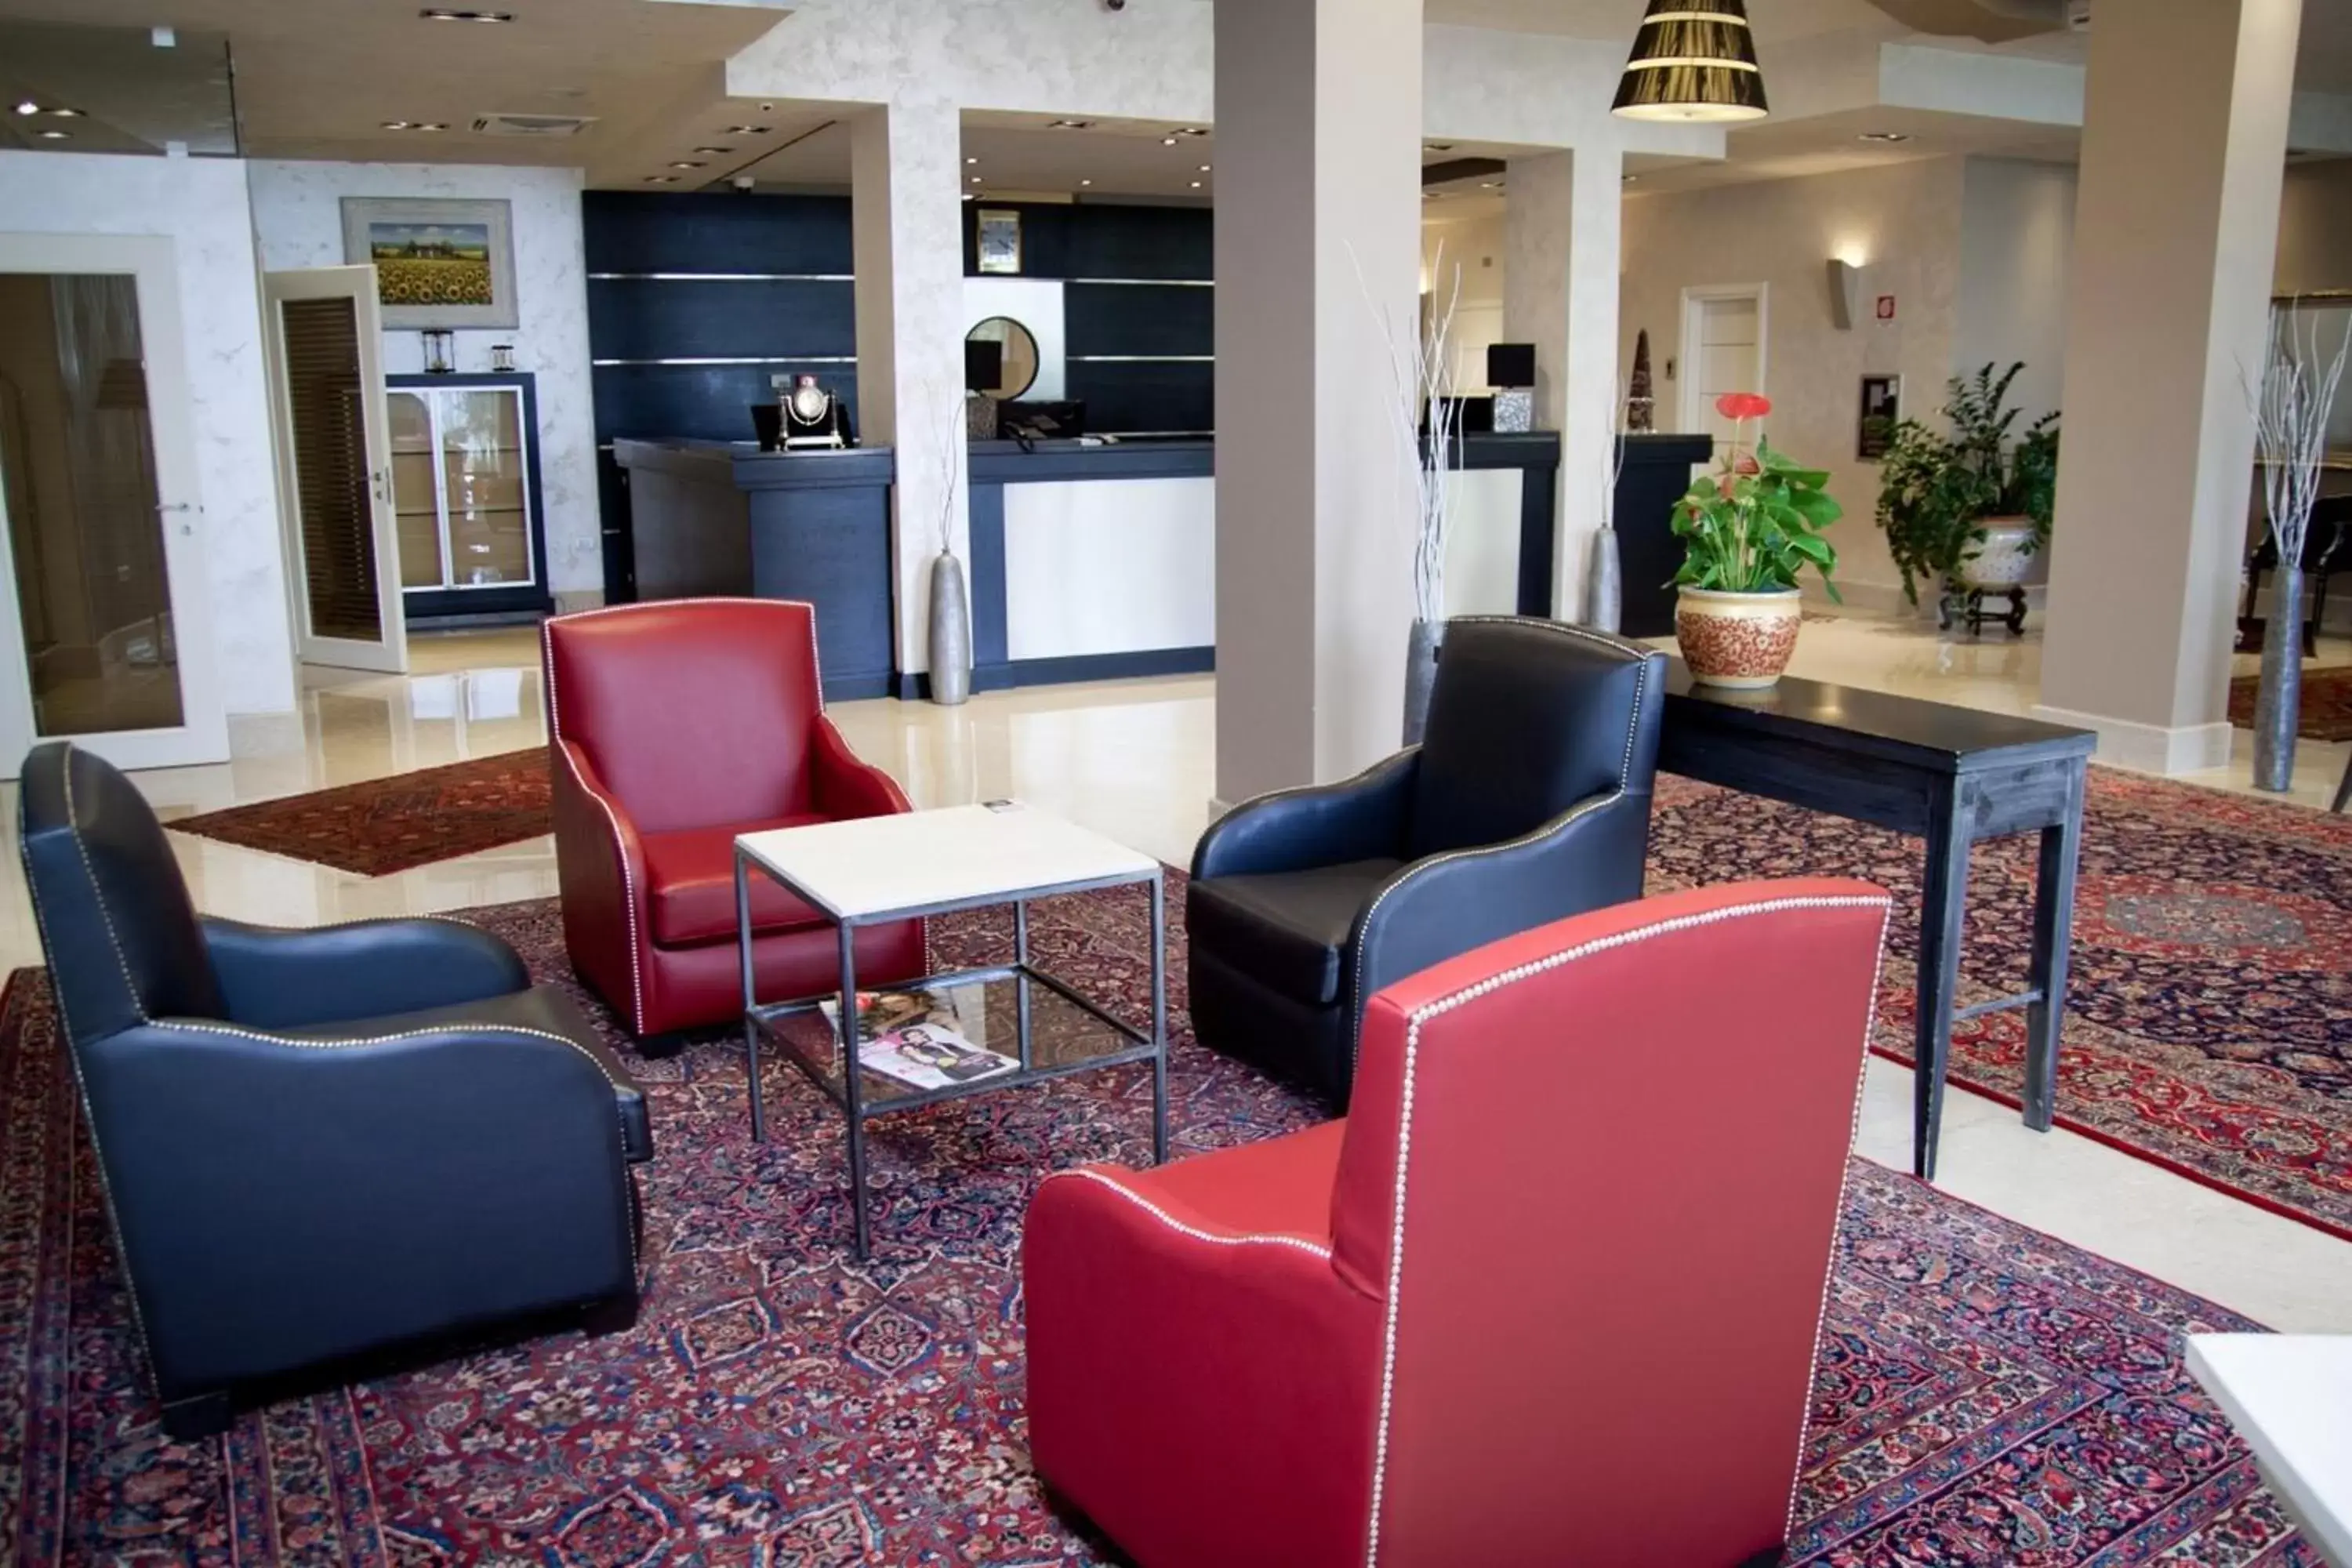 Area and facilities, Lobby/Reception in Plaza Hotel Catania